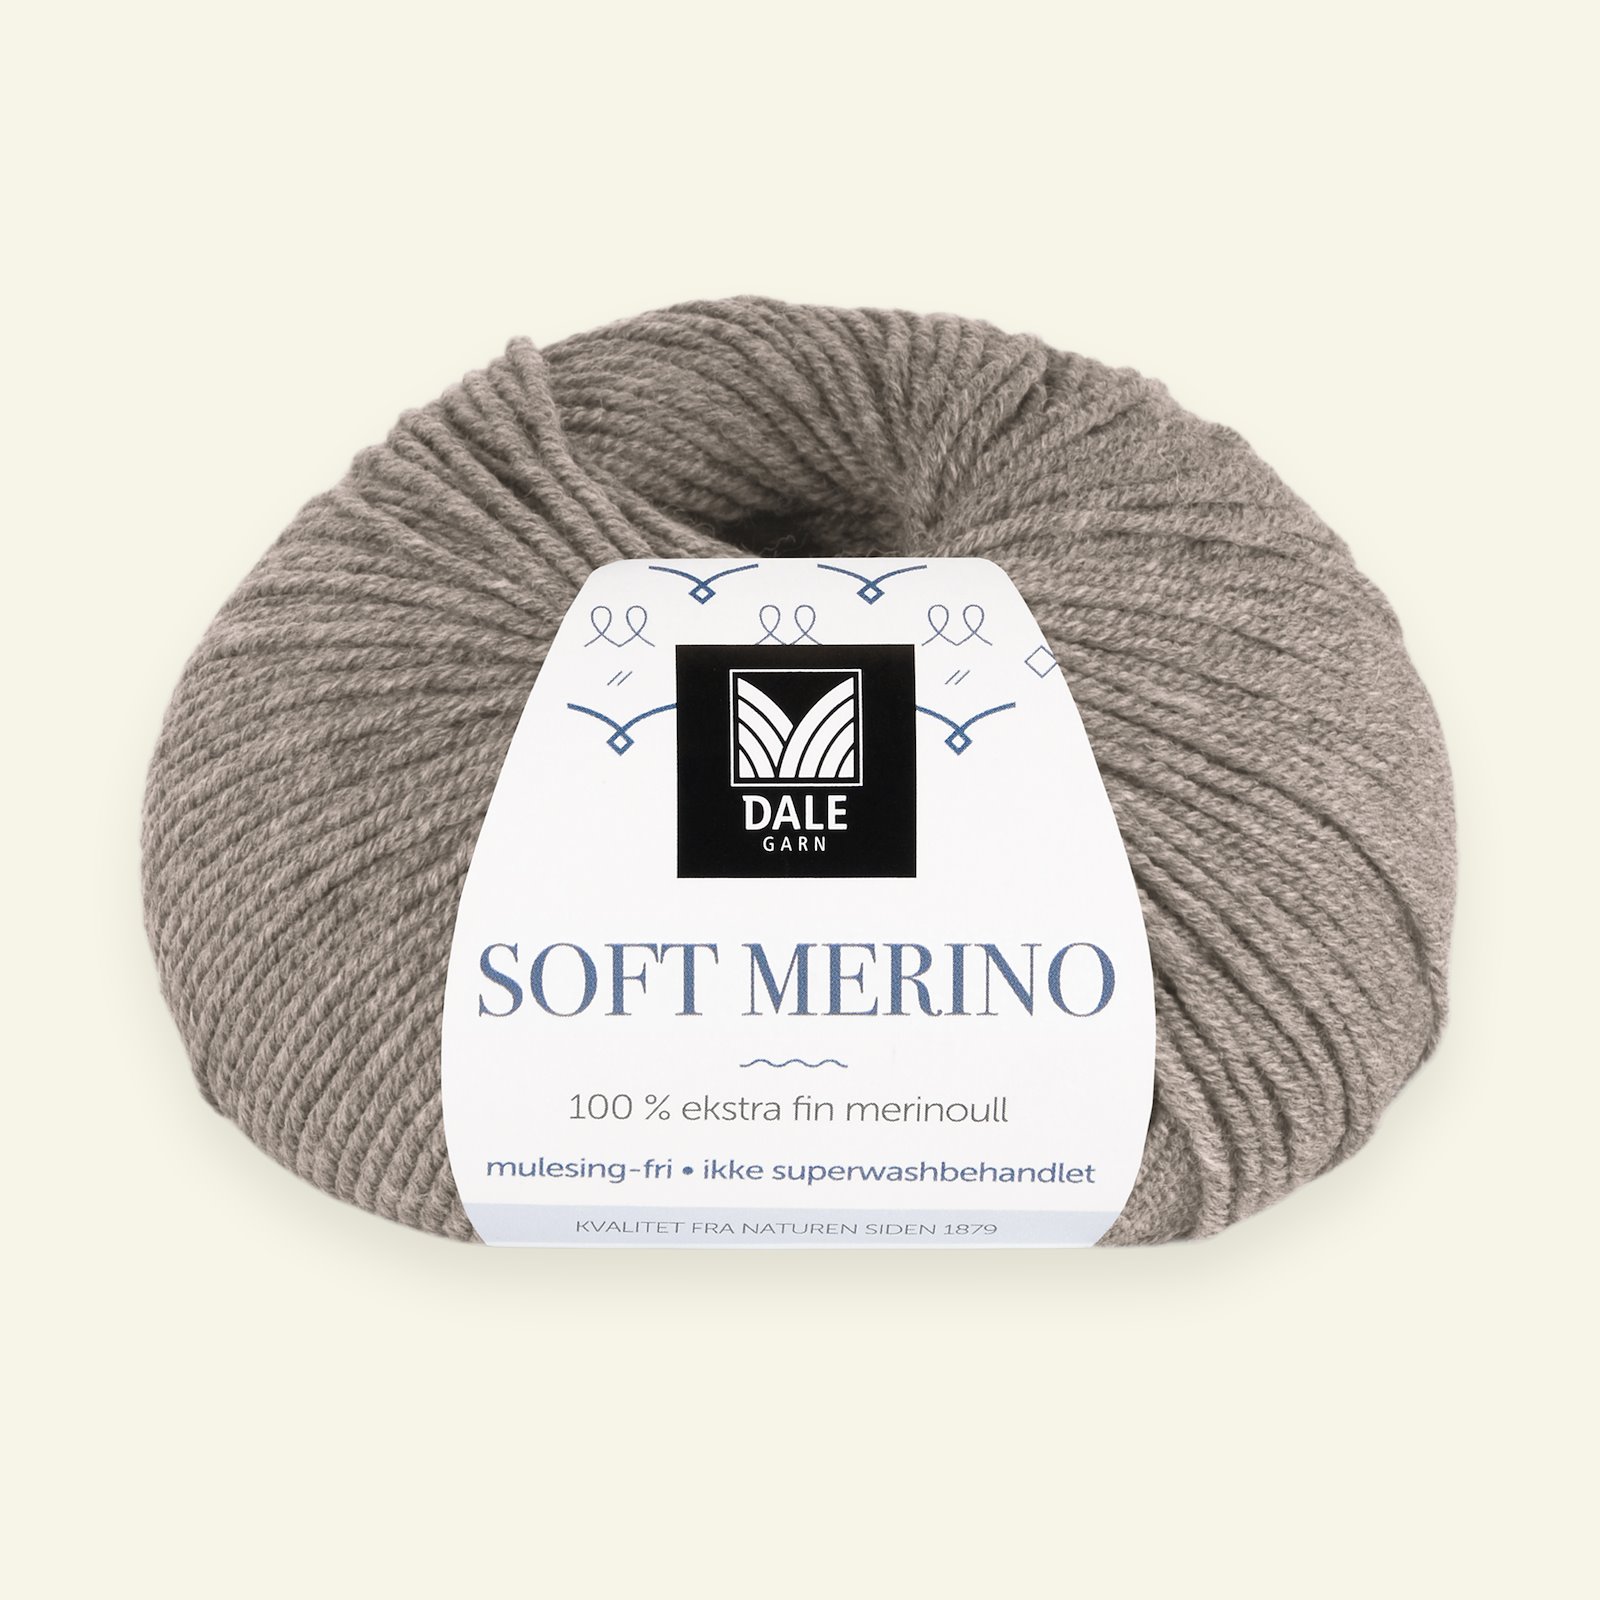 Dale Garn, 100% Extrafeine Merino-Wolle "Soft Merino", dunkel beige mel. (3005) 90000326_pack